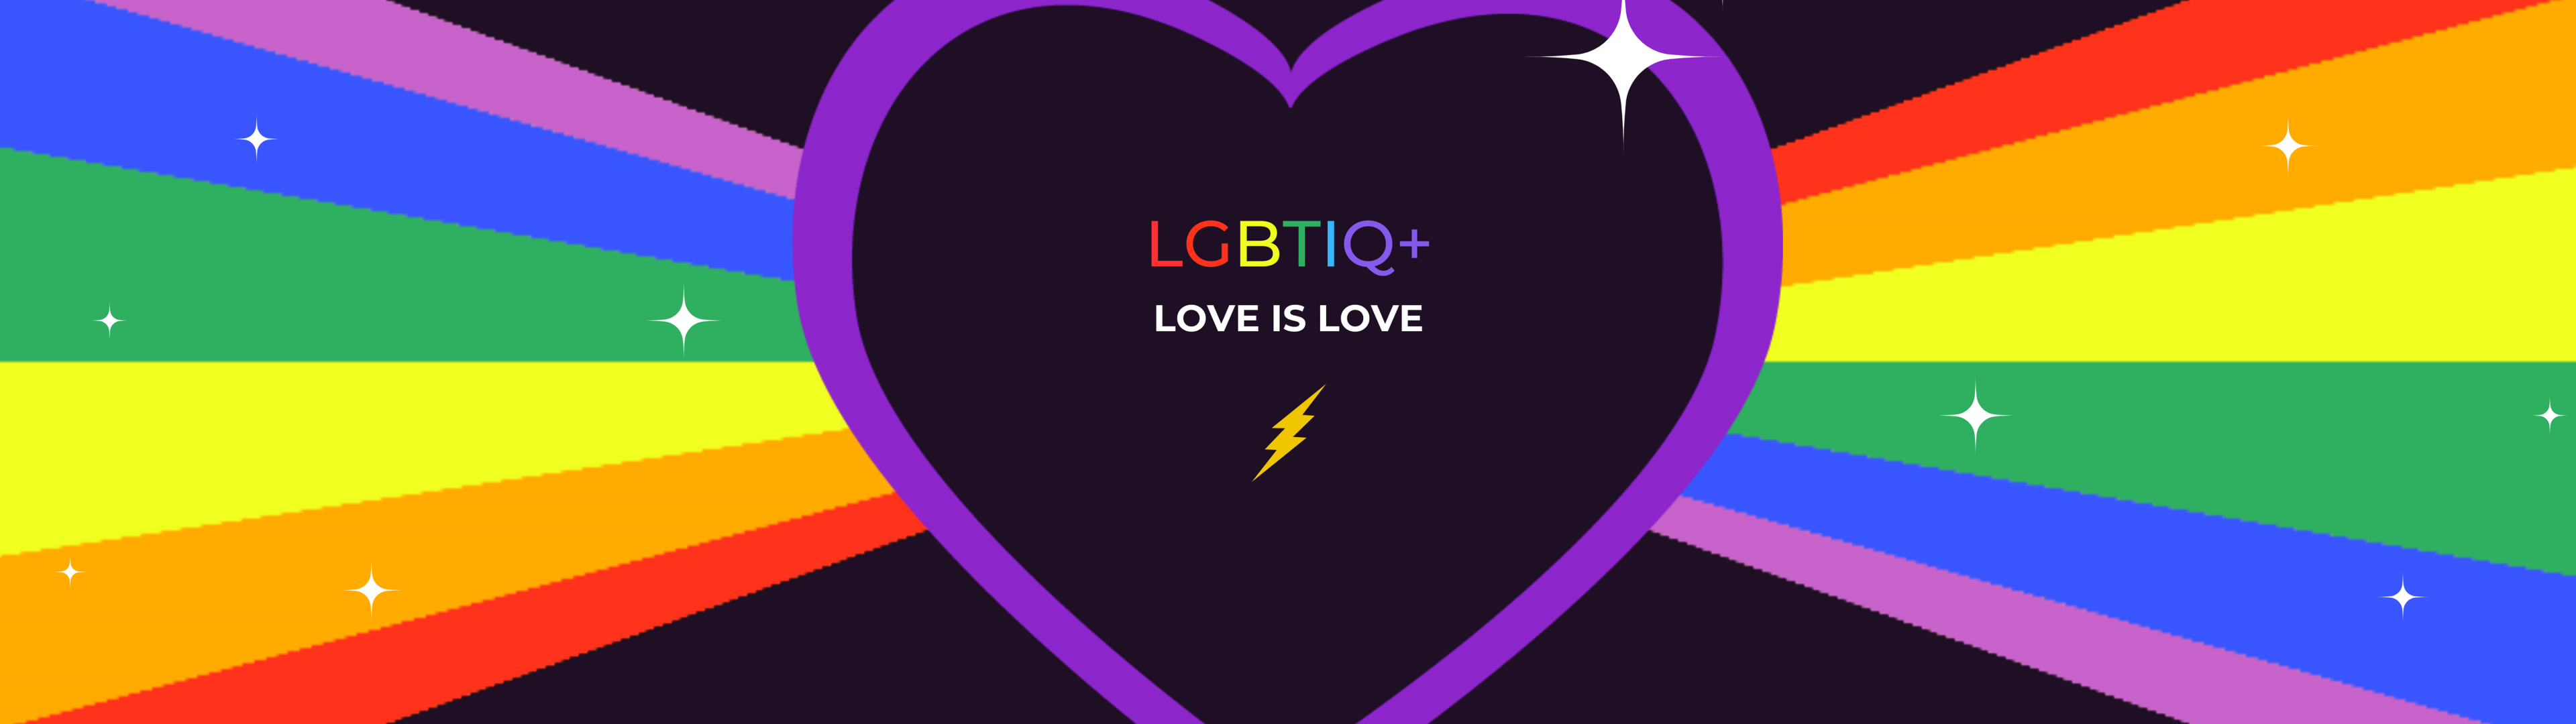 Love Is Love Wallpaper 4K, LGBTQ, Rainbow, Love heart